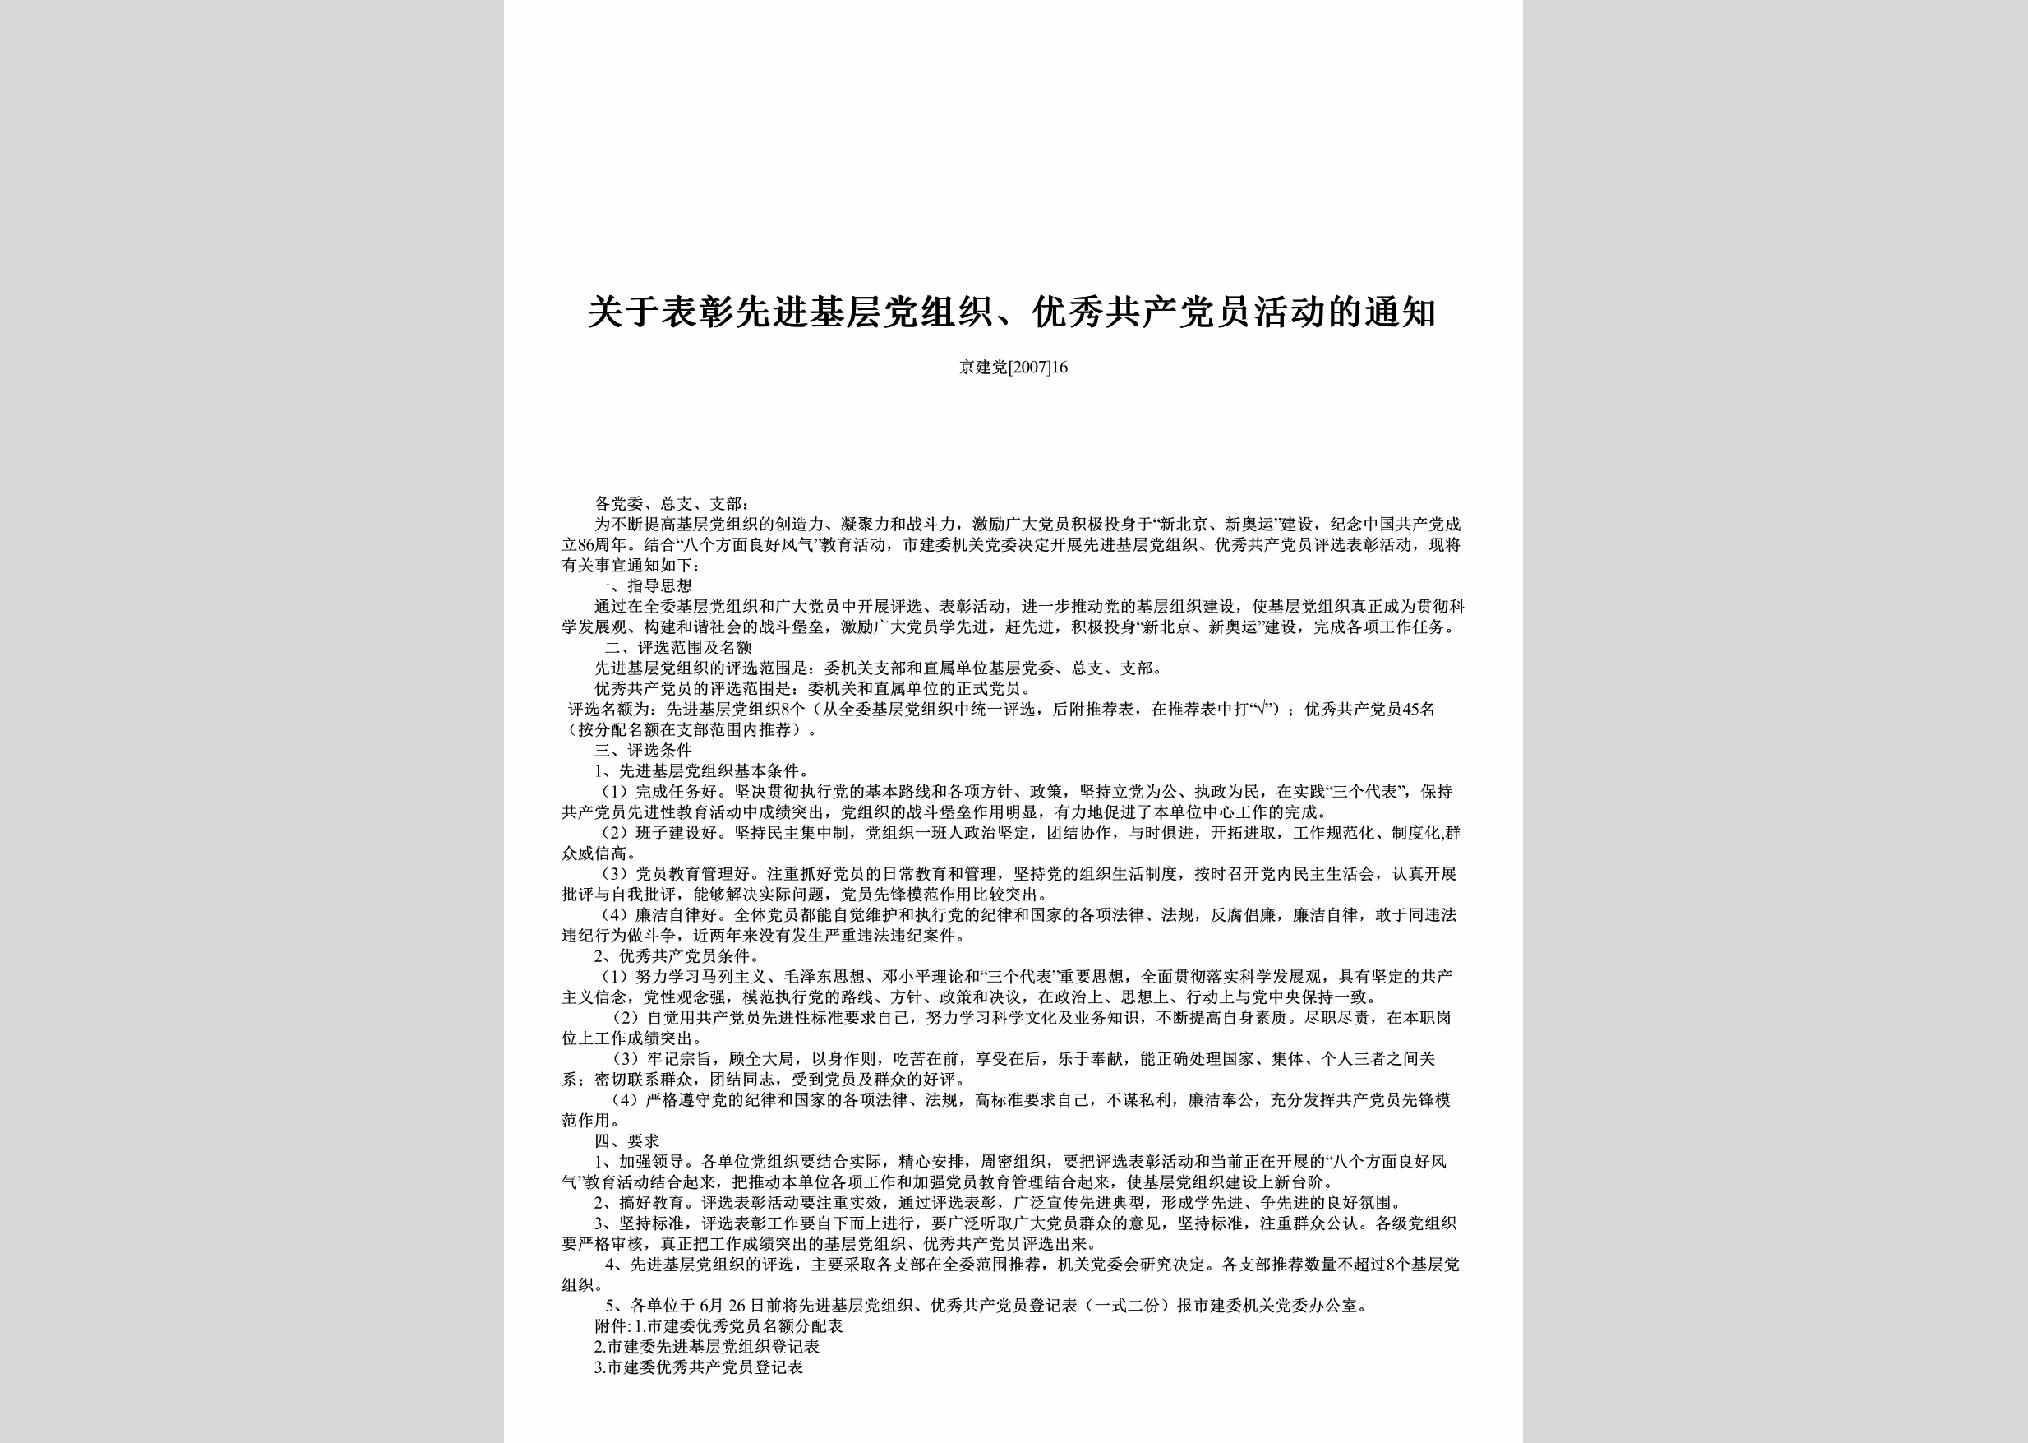 京建党[2007]16：关于表彰先进基层党组织、优秀共产党员活动的通知